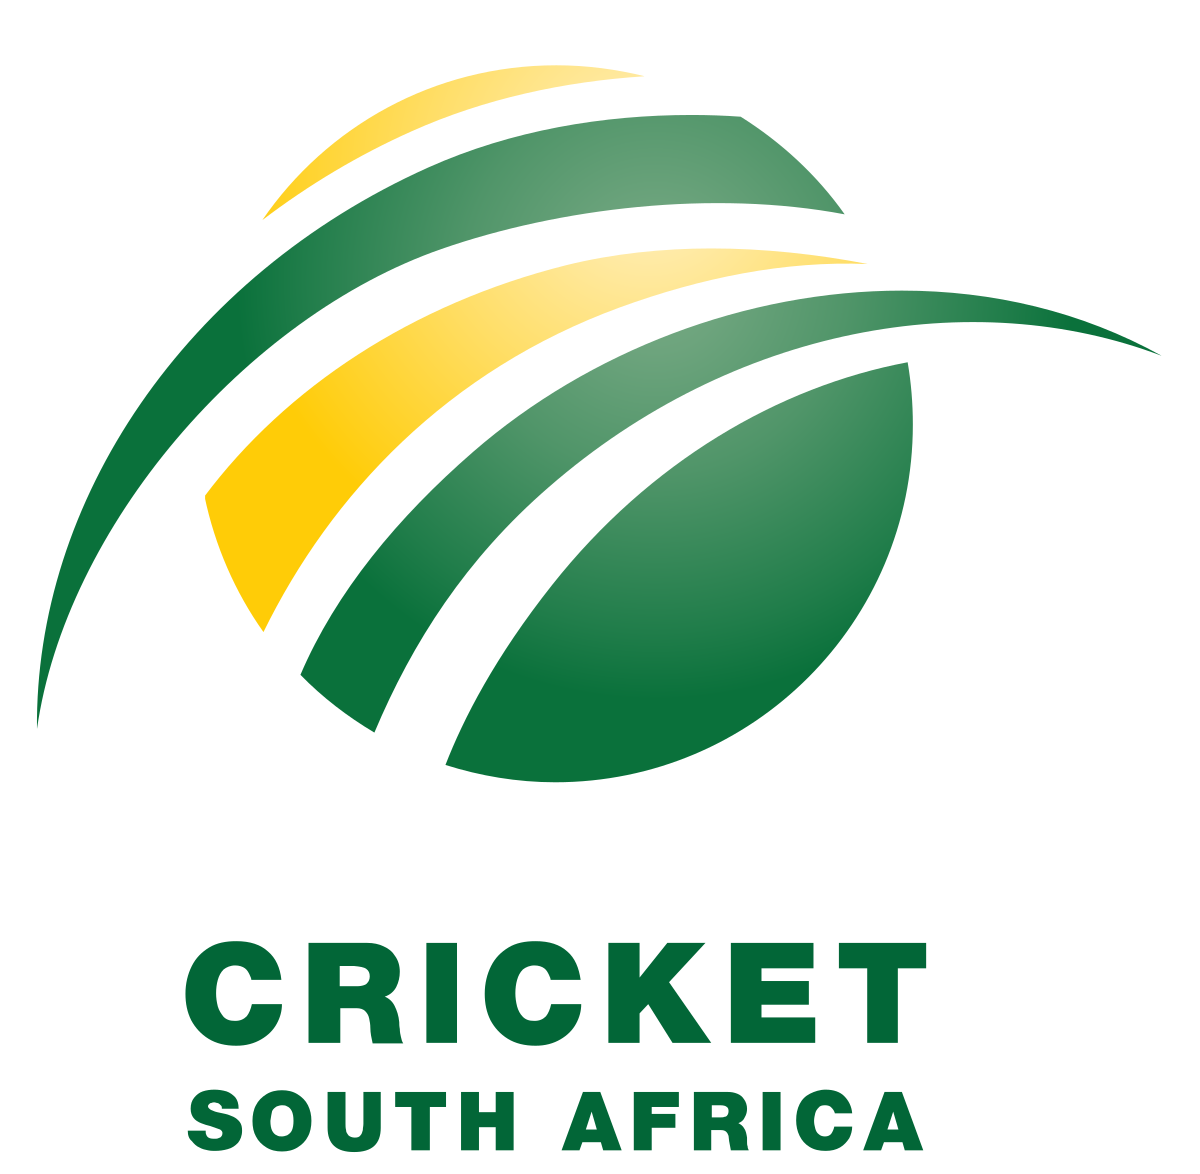 cricket team logo | international cricket team logo | icc cricket team logo  | all cricket team logo - YouTube